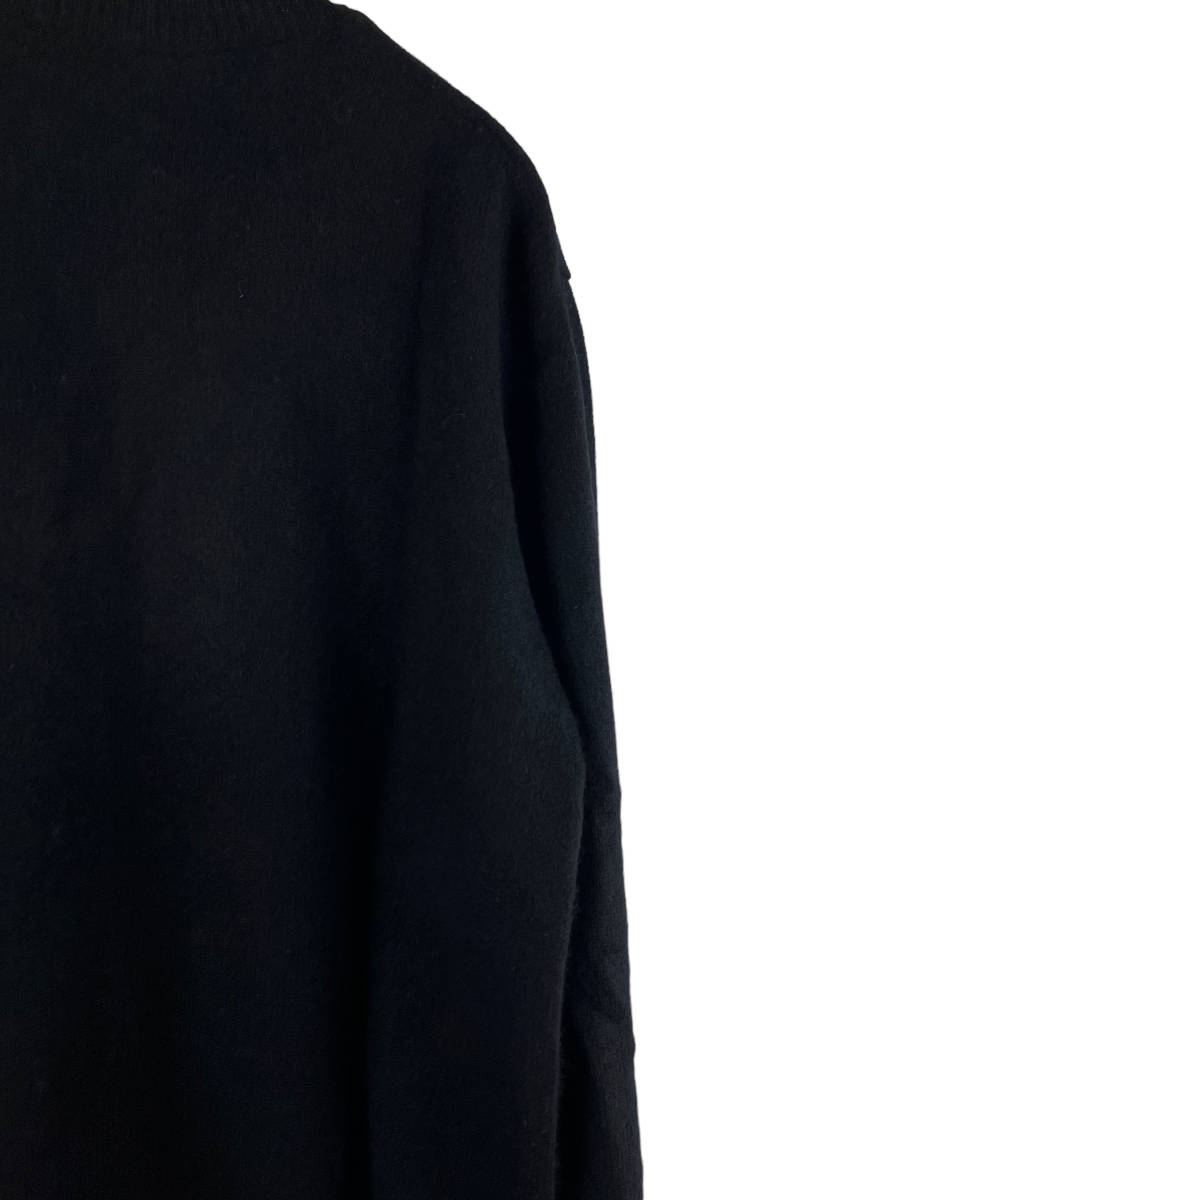 BATONER(バトナー) Casual Wearing Longsleeve Knit T Shirt (black)_画像6